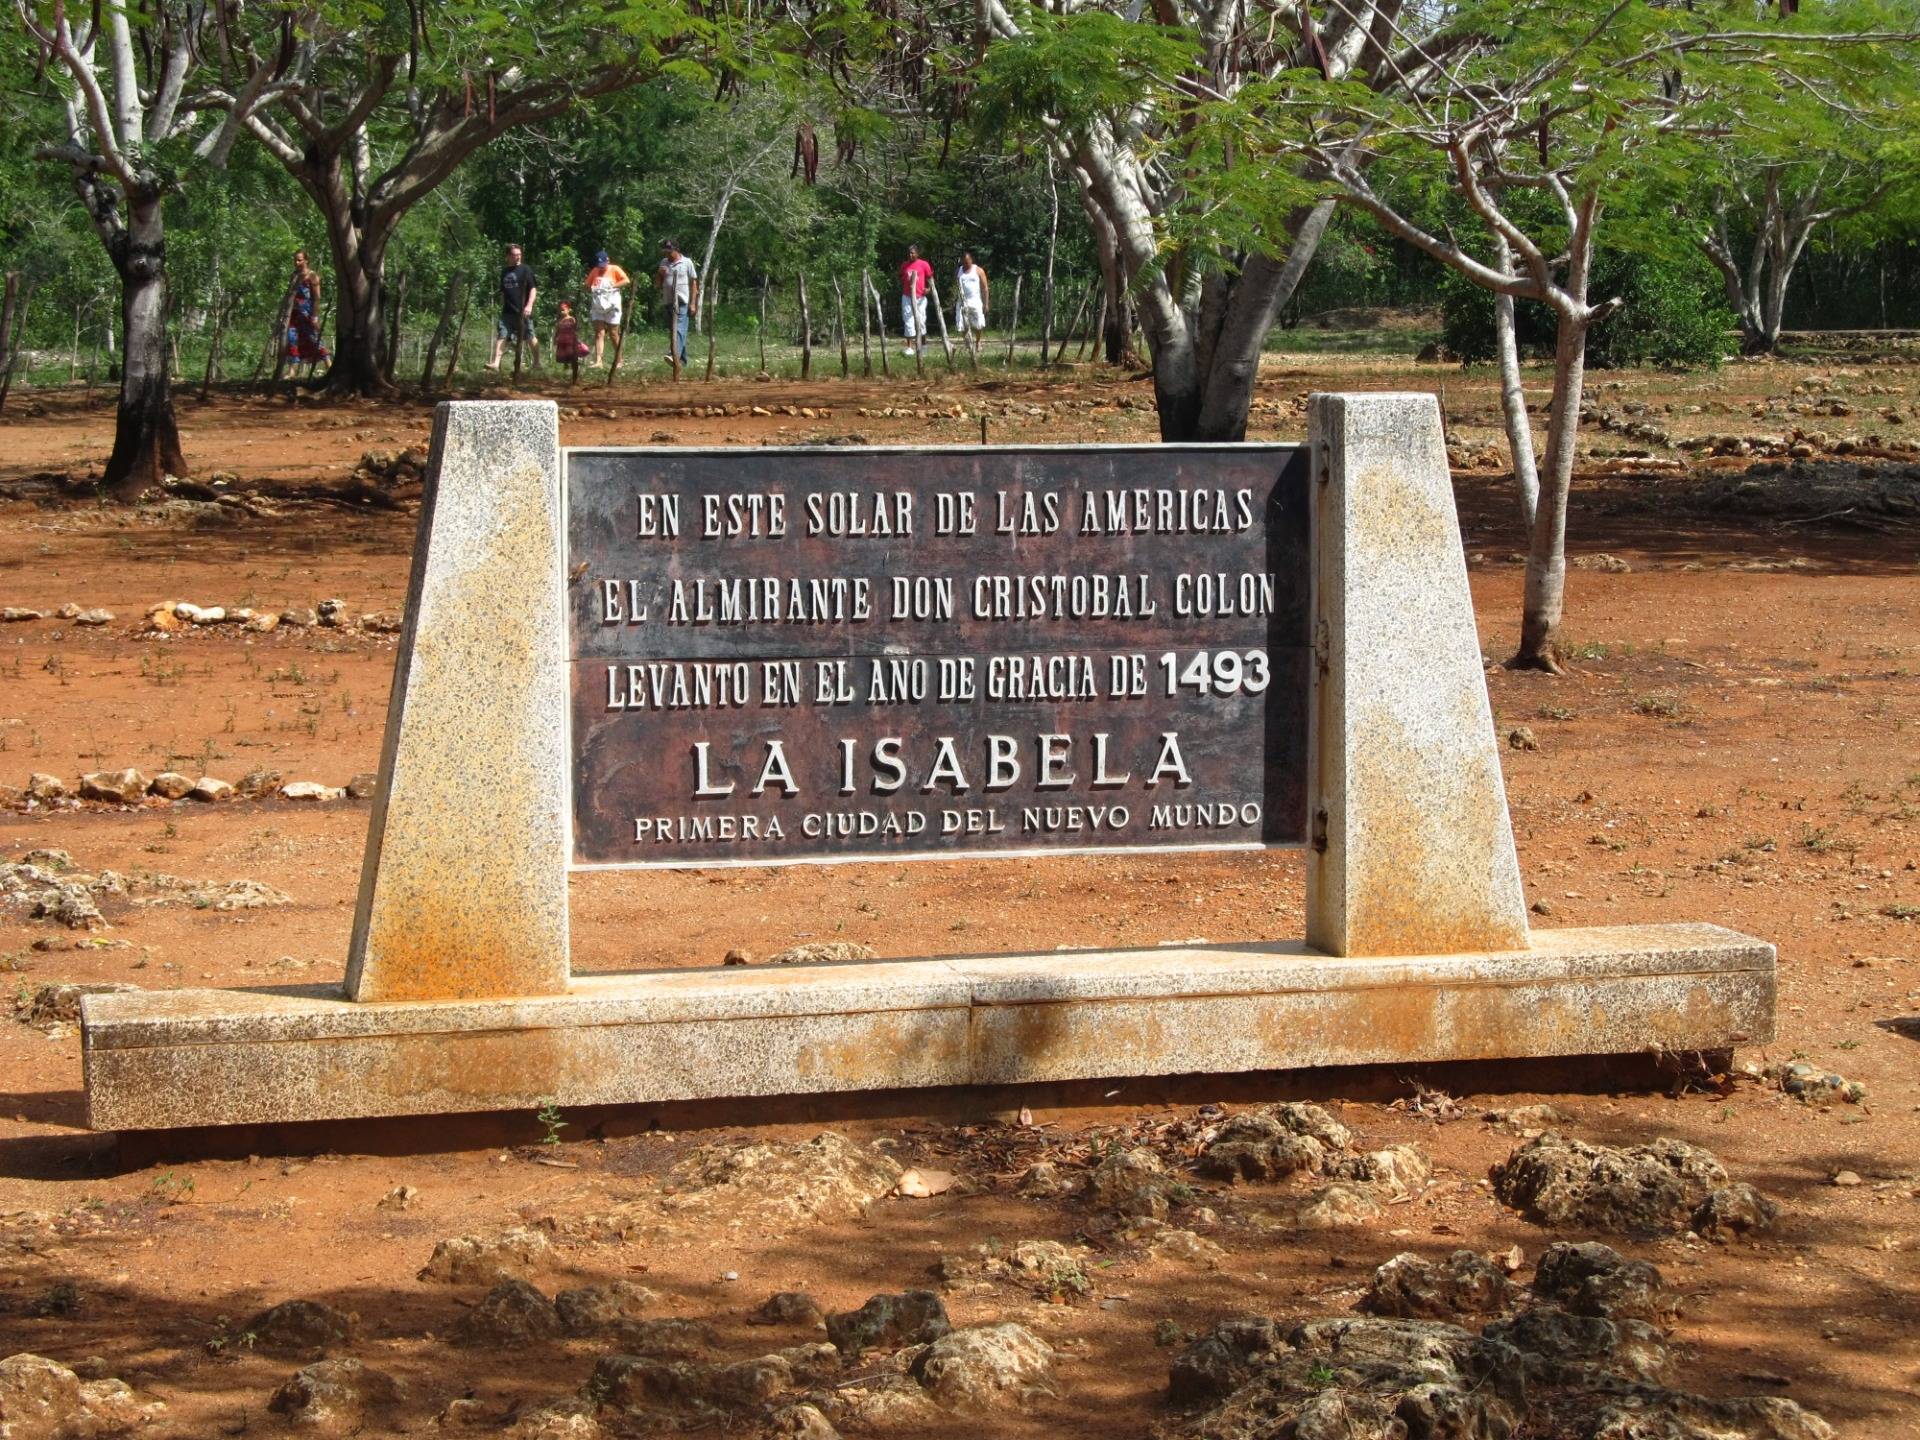 La Isabela - miejsce założenia pierwszej osady w Nowym Świecie